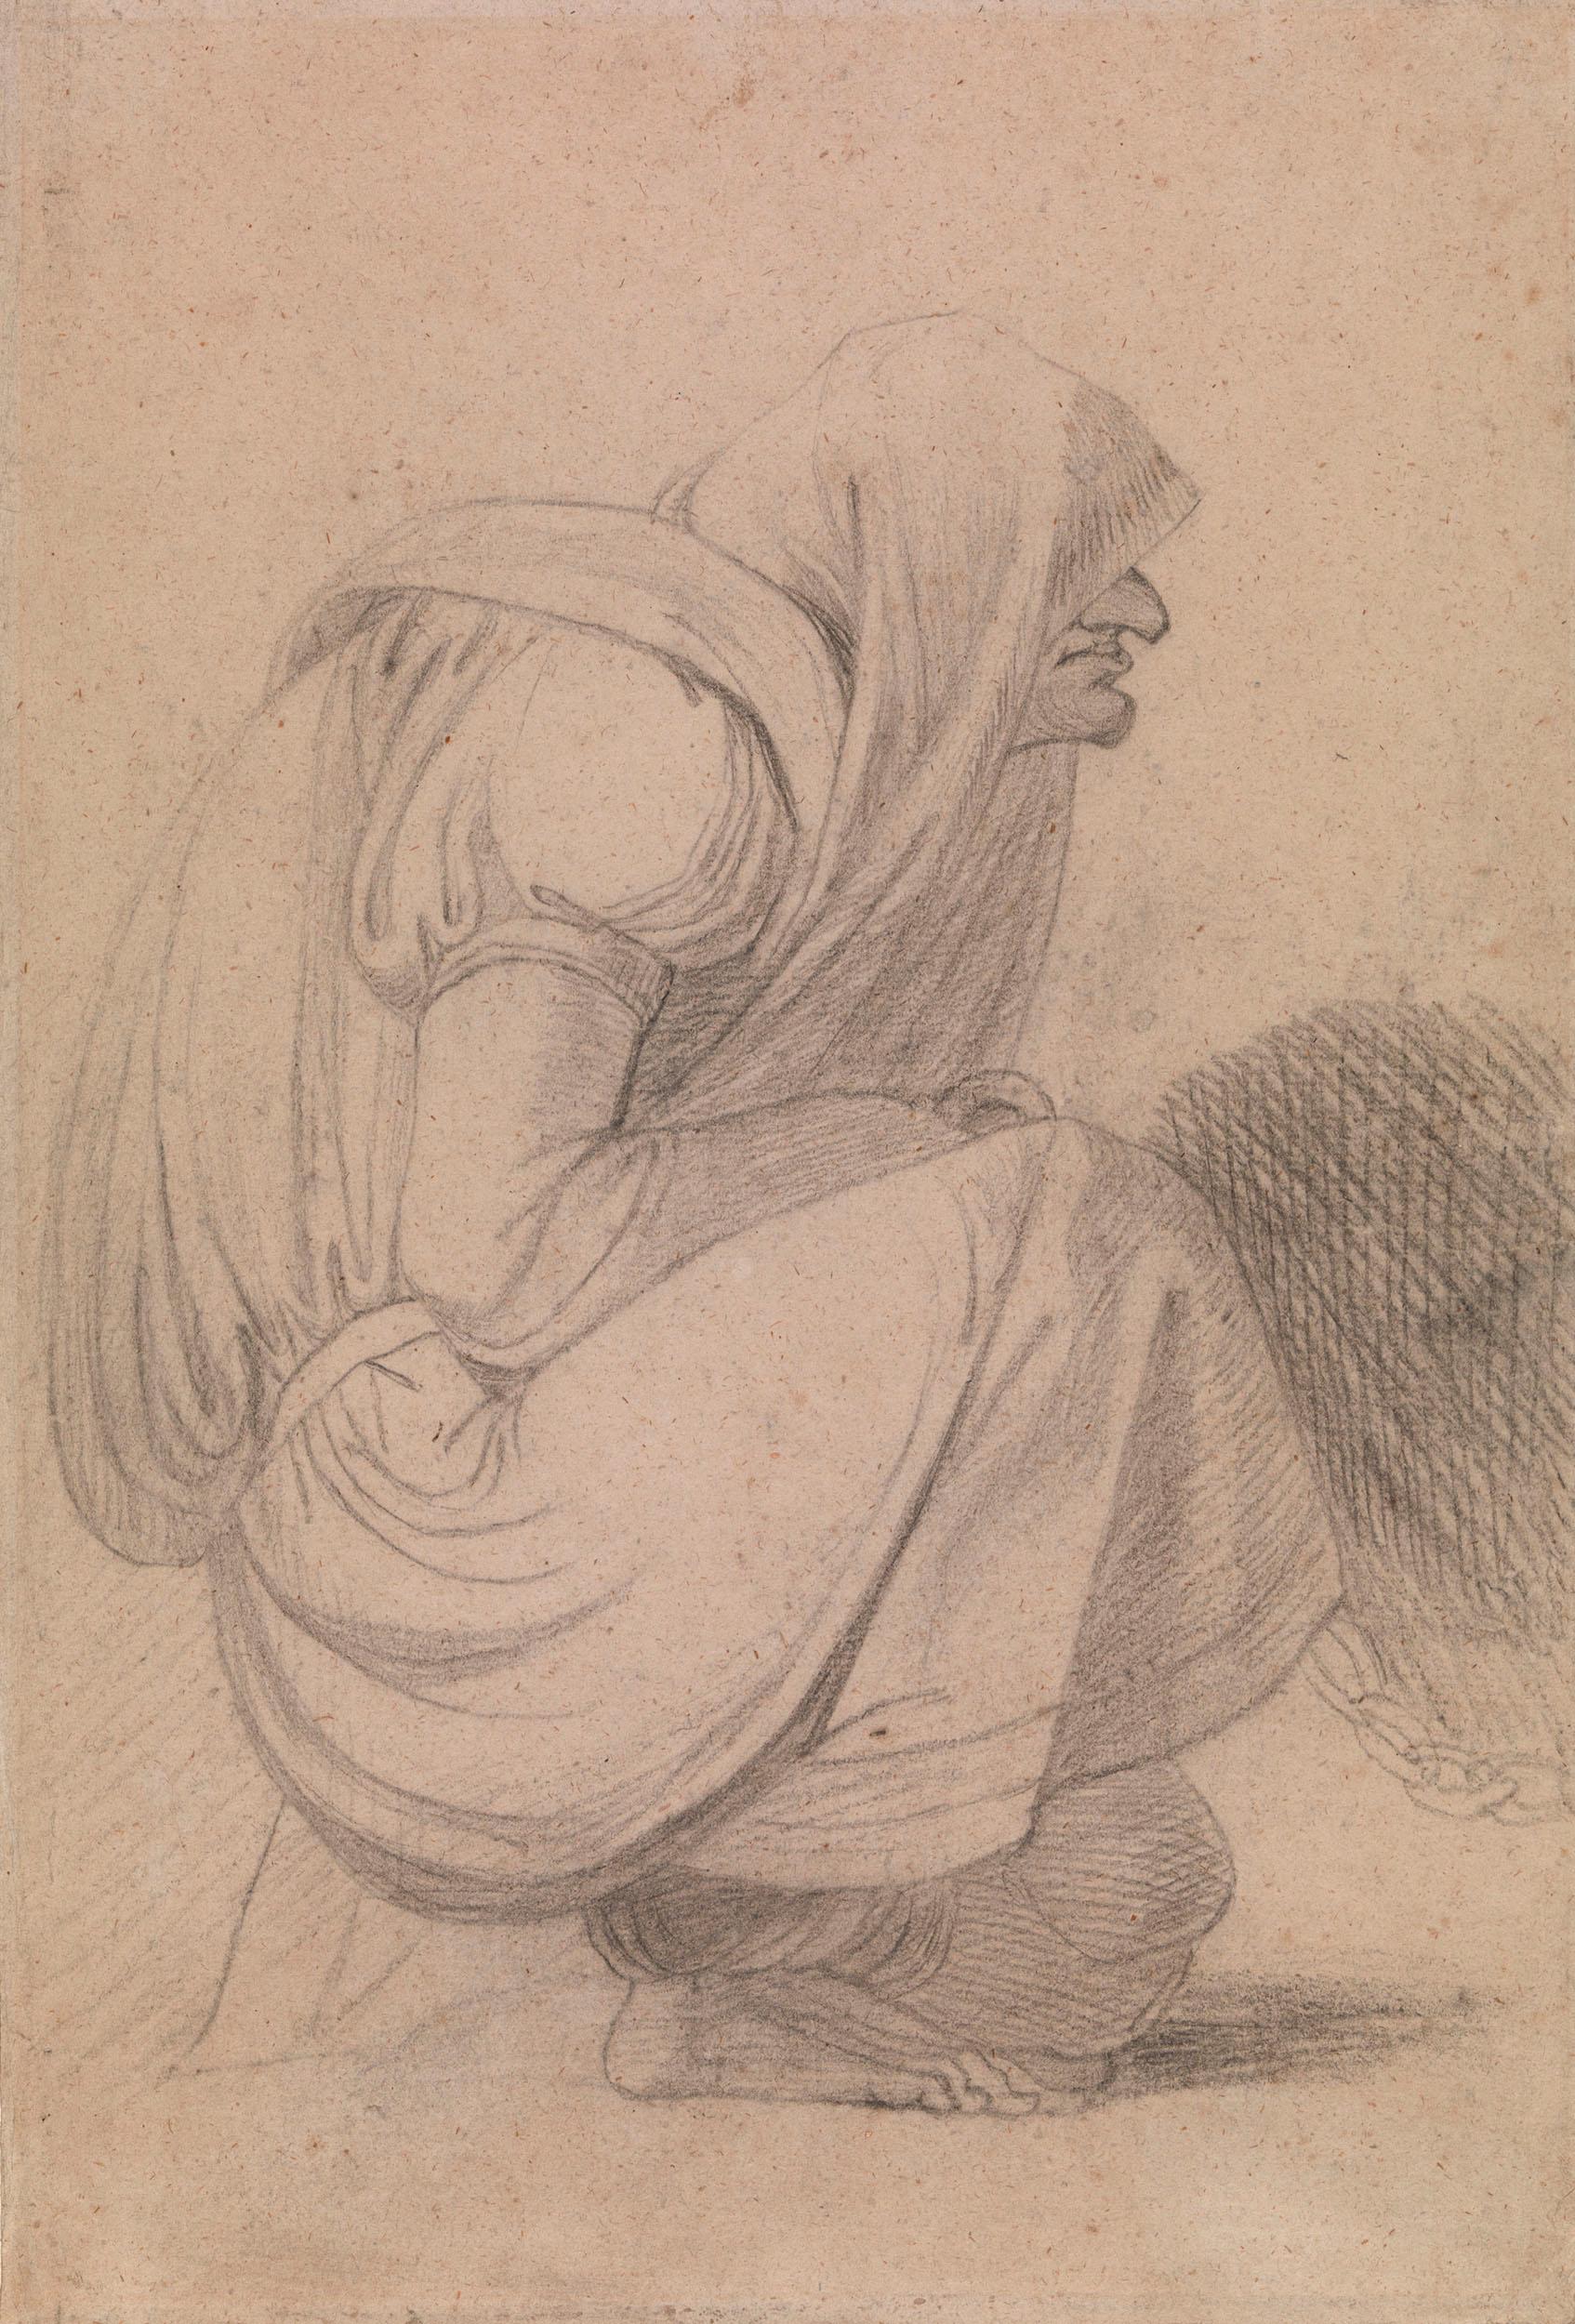 Zeichnung einer gefangenen Frau – Art von Henry Fuseli